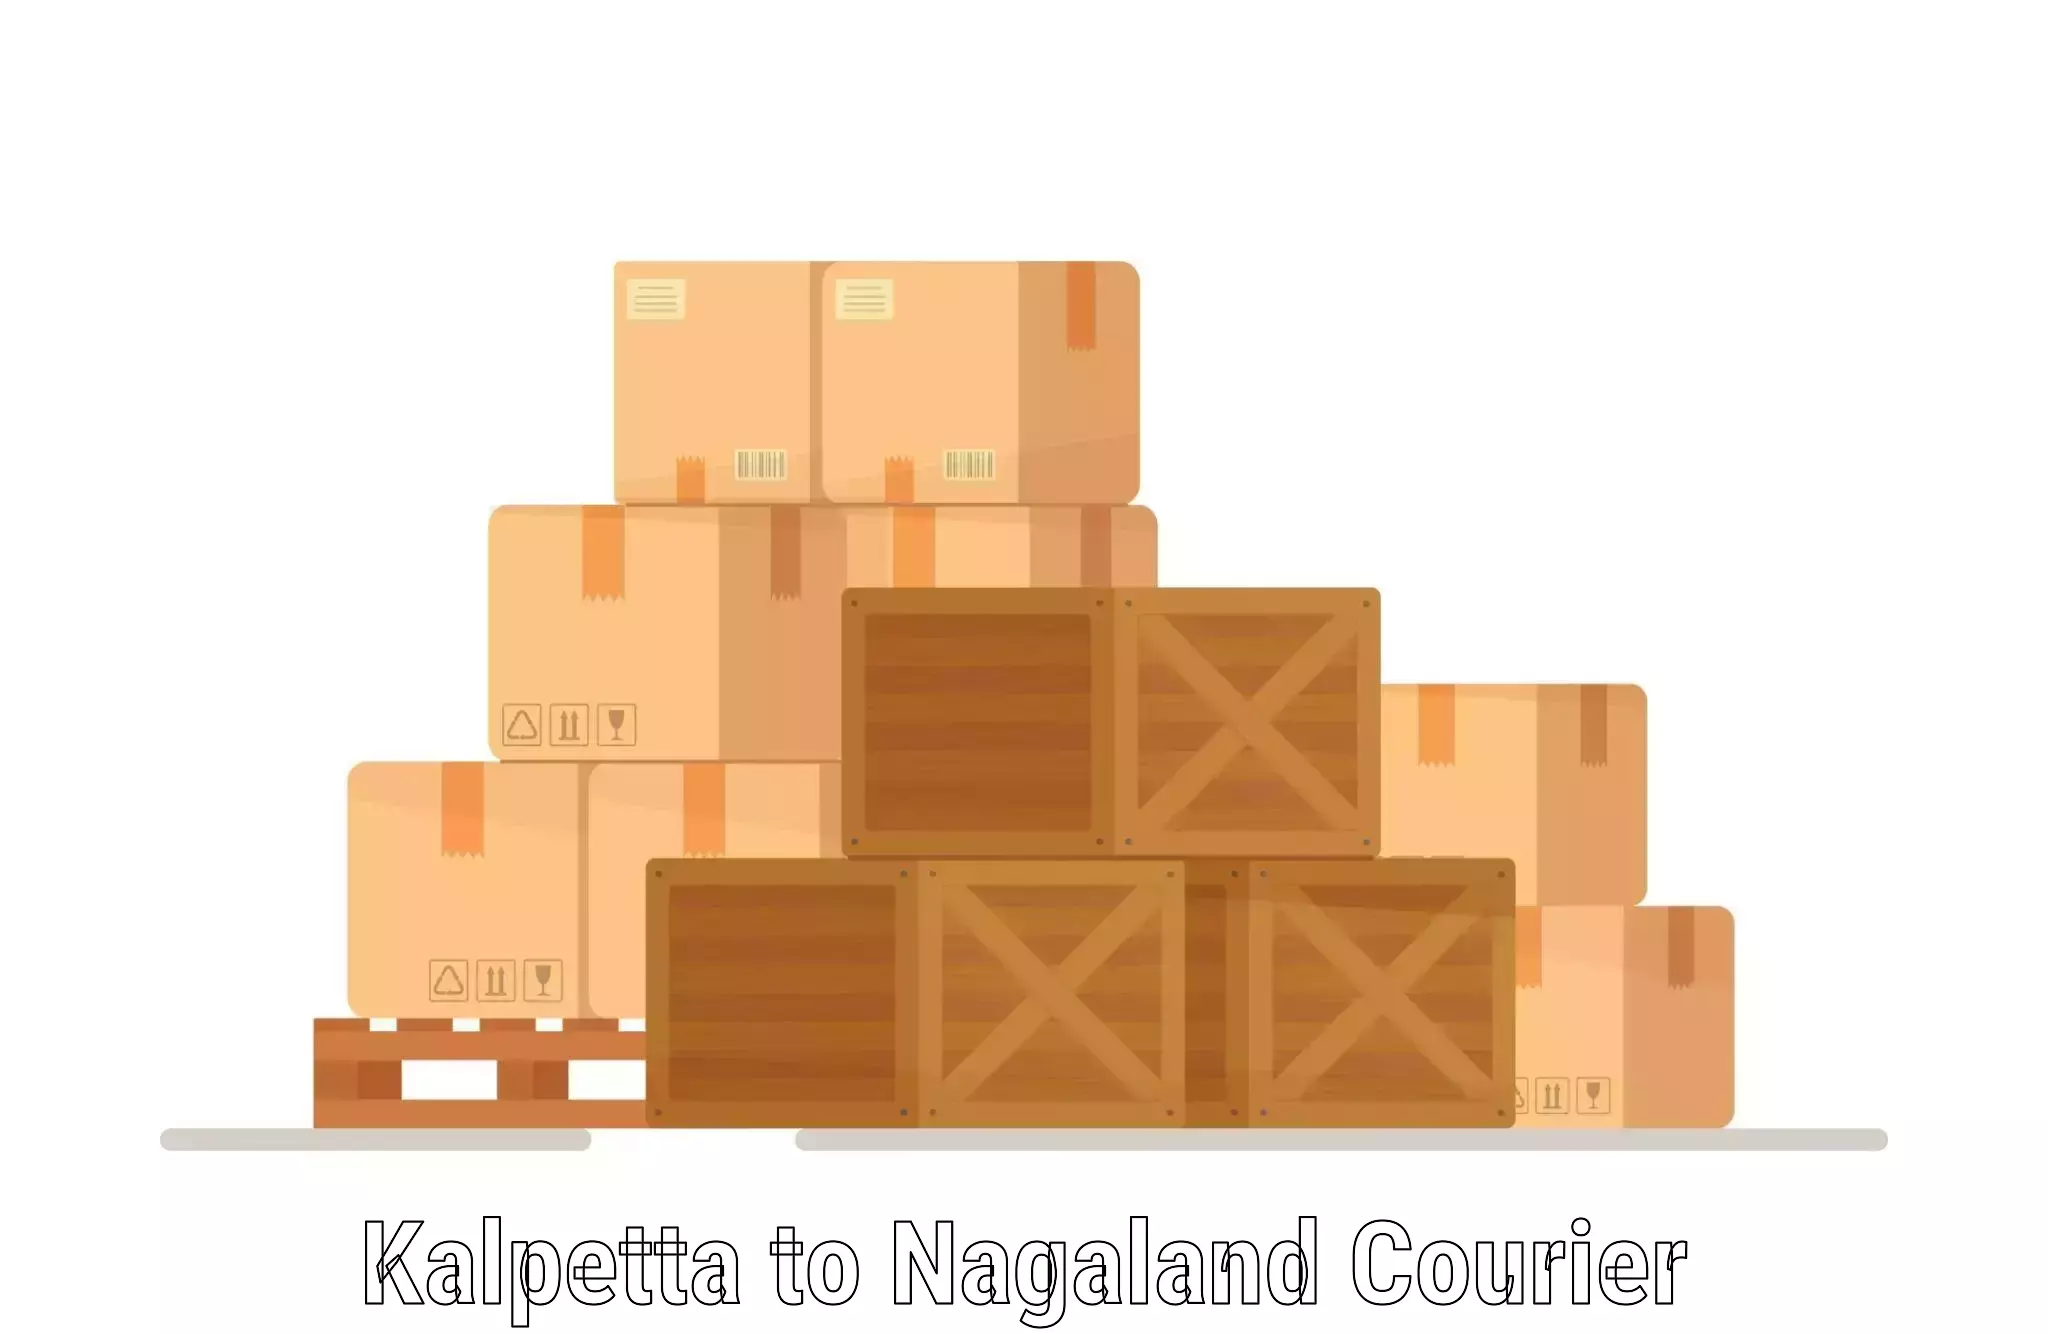 Urban courier service Kalpetta to Kohima